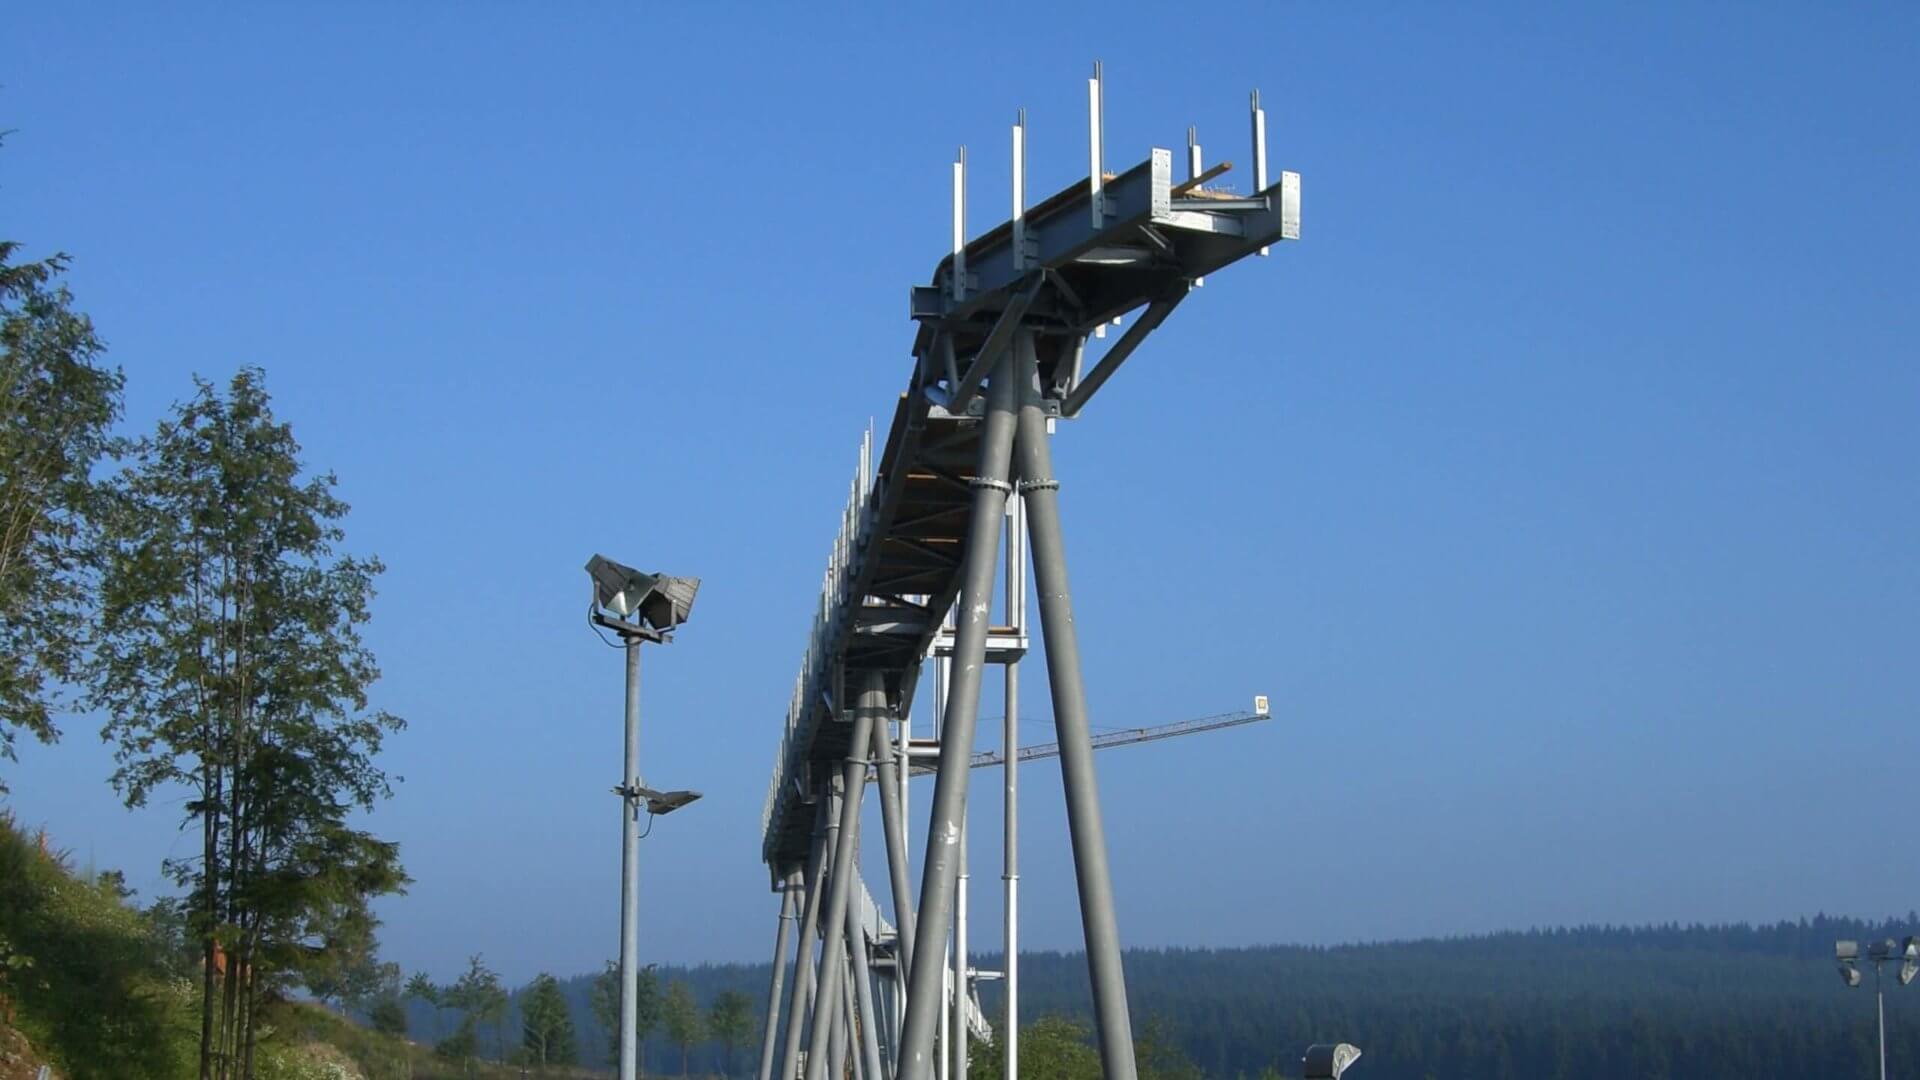 Panorama Erlebnis Brücke is being built at Erlebnisberg Kappe